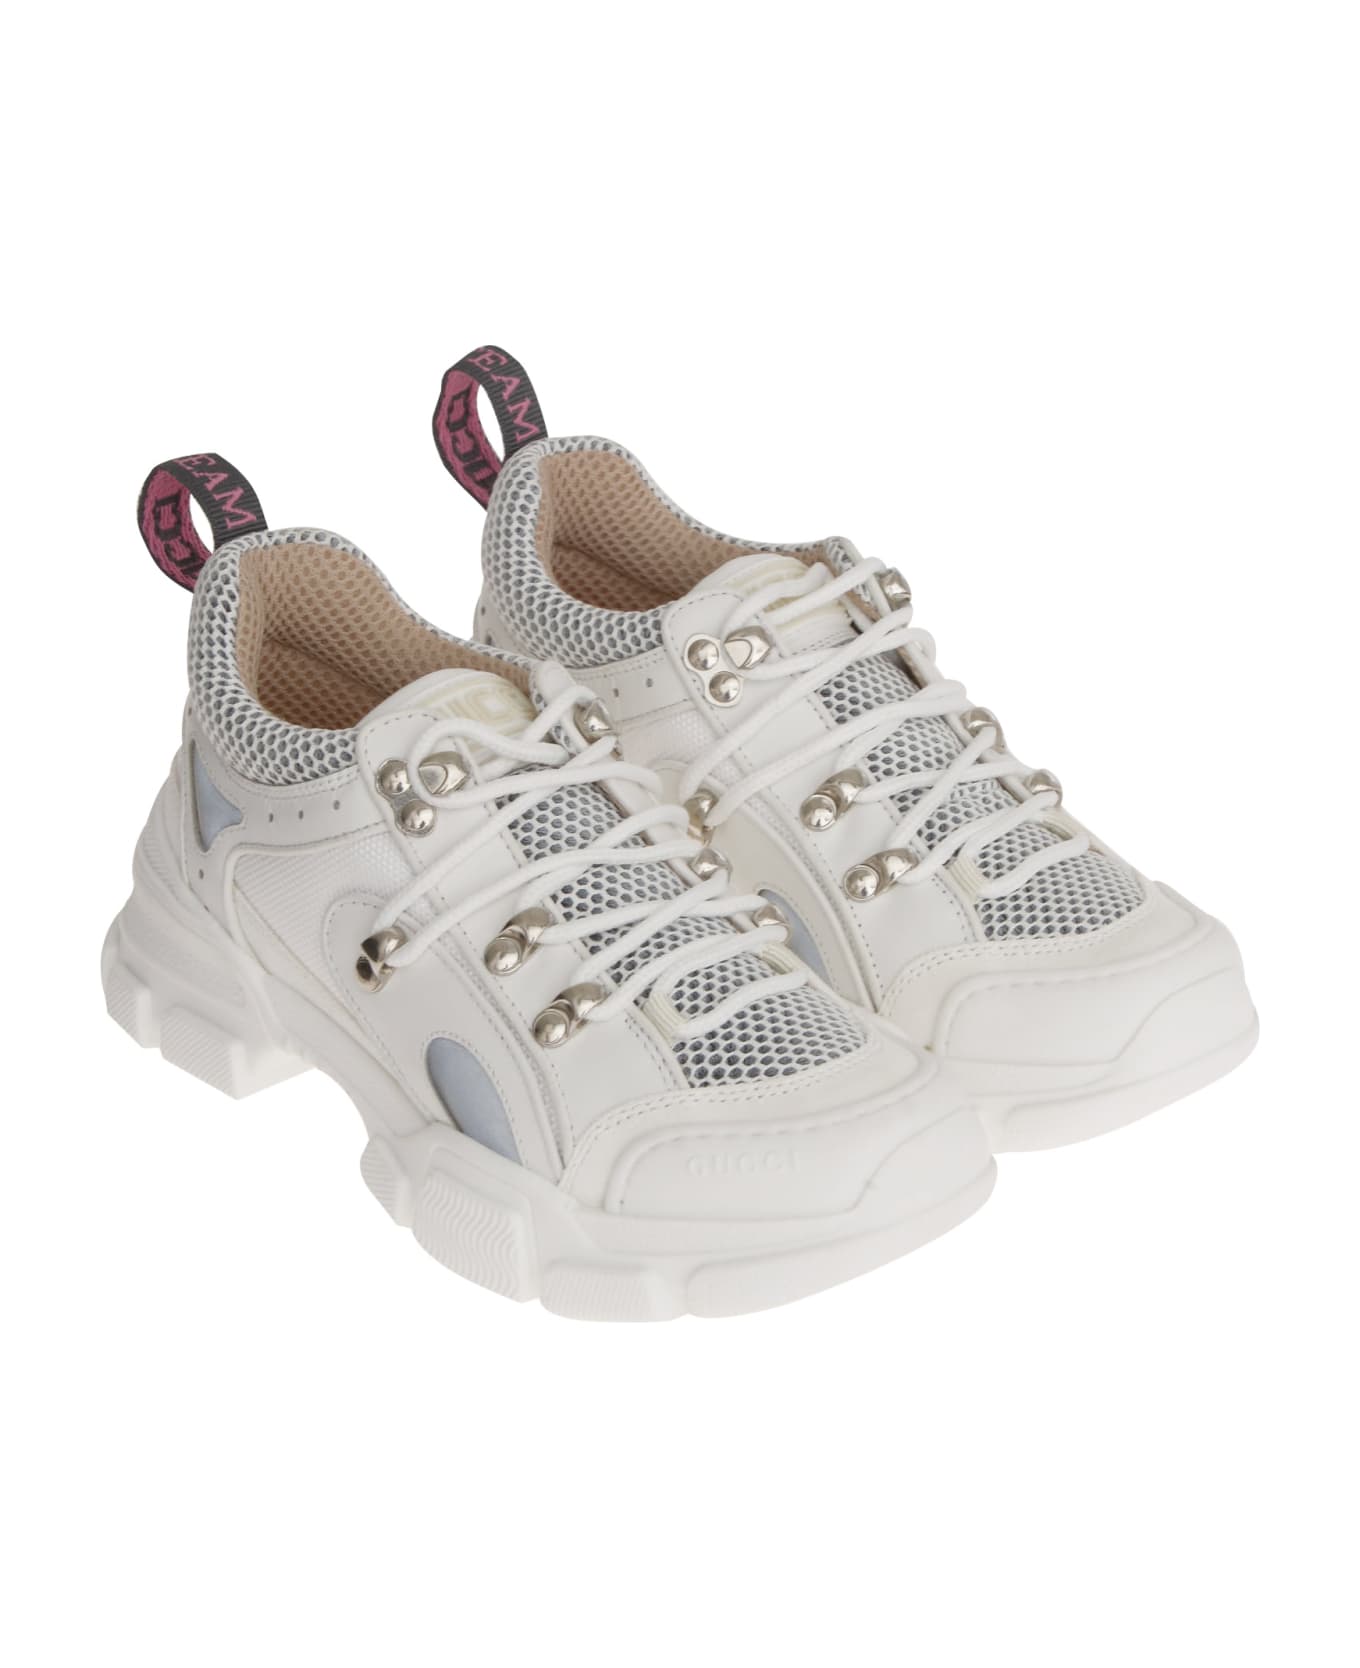 Gucci Flashtrack Sneakers - White